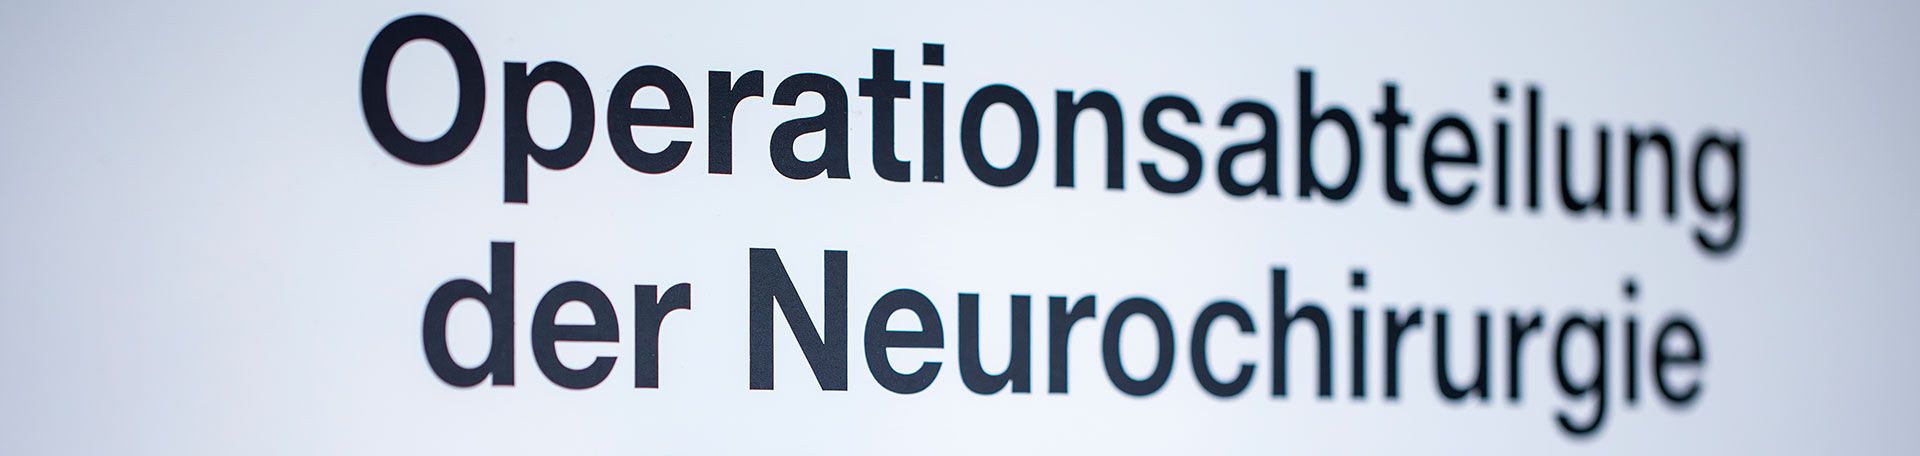 Schild mit Aufschrift: Operationsabteilung der Neurochirurgie